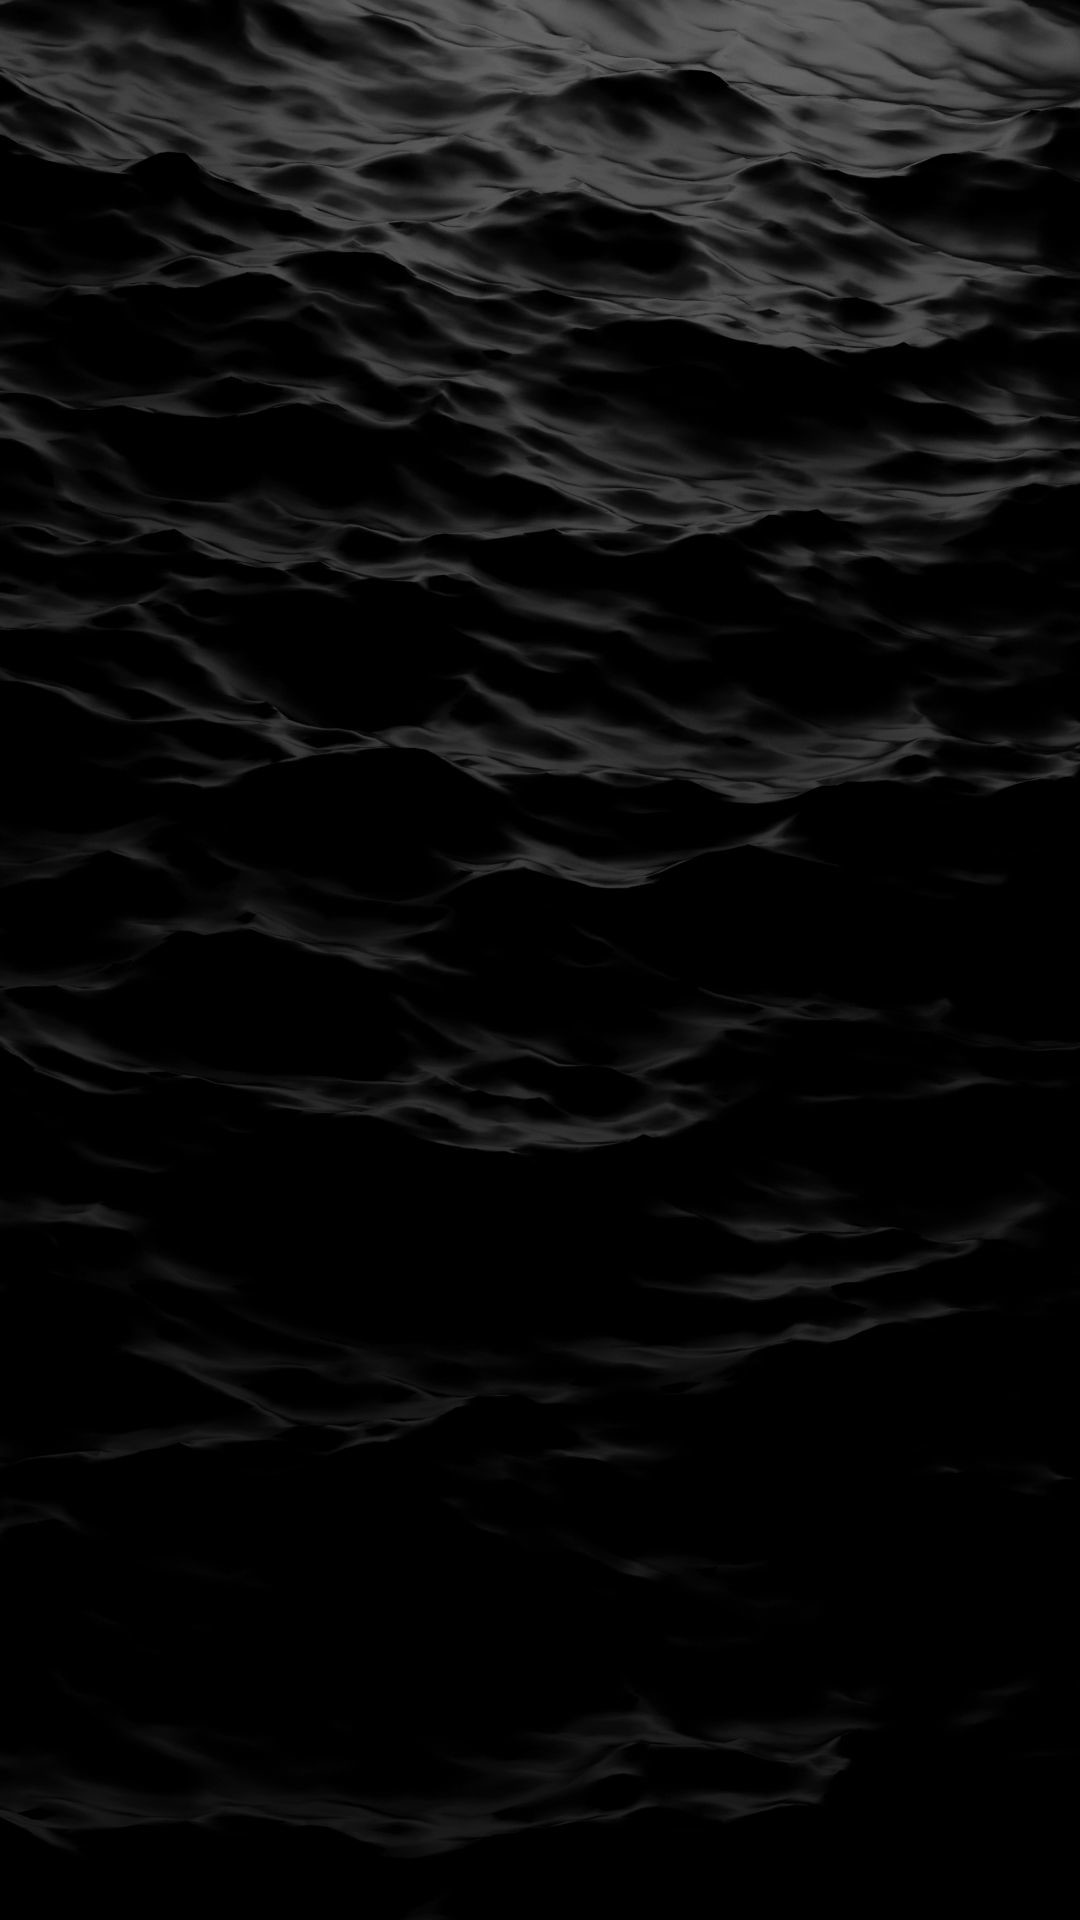 hd wallpaper für iphone 7,schwarz,wasser,dunkelheit,himmel,atmosphäre